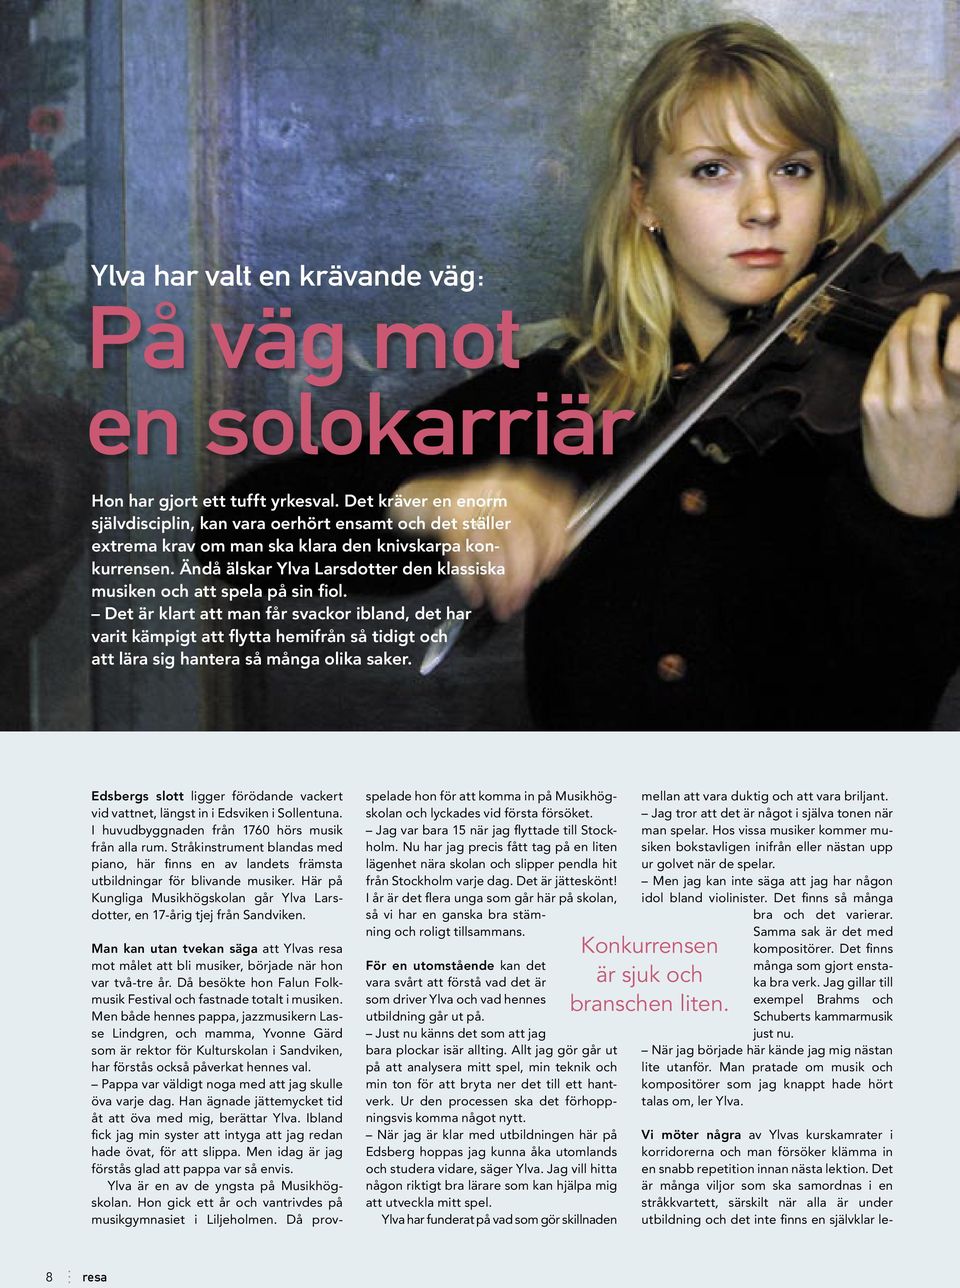 Ändå älskar Ylva Larsdotter den klassiska musiken och att spela på sin fiol.